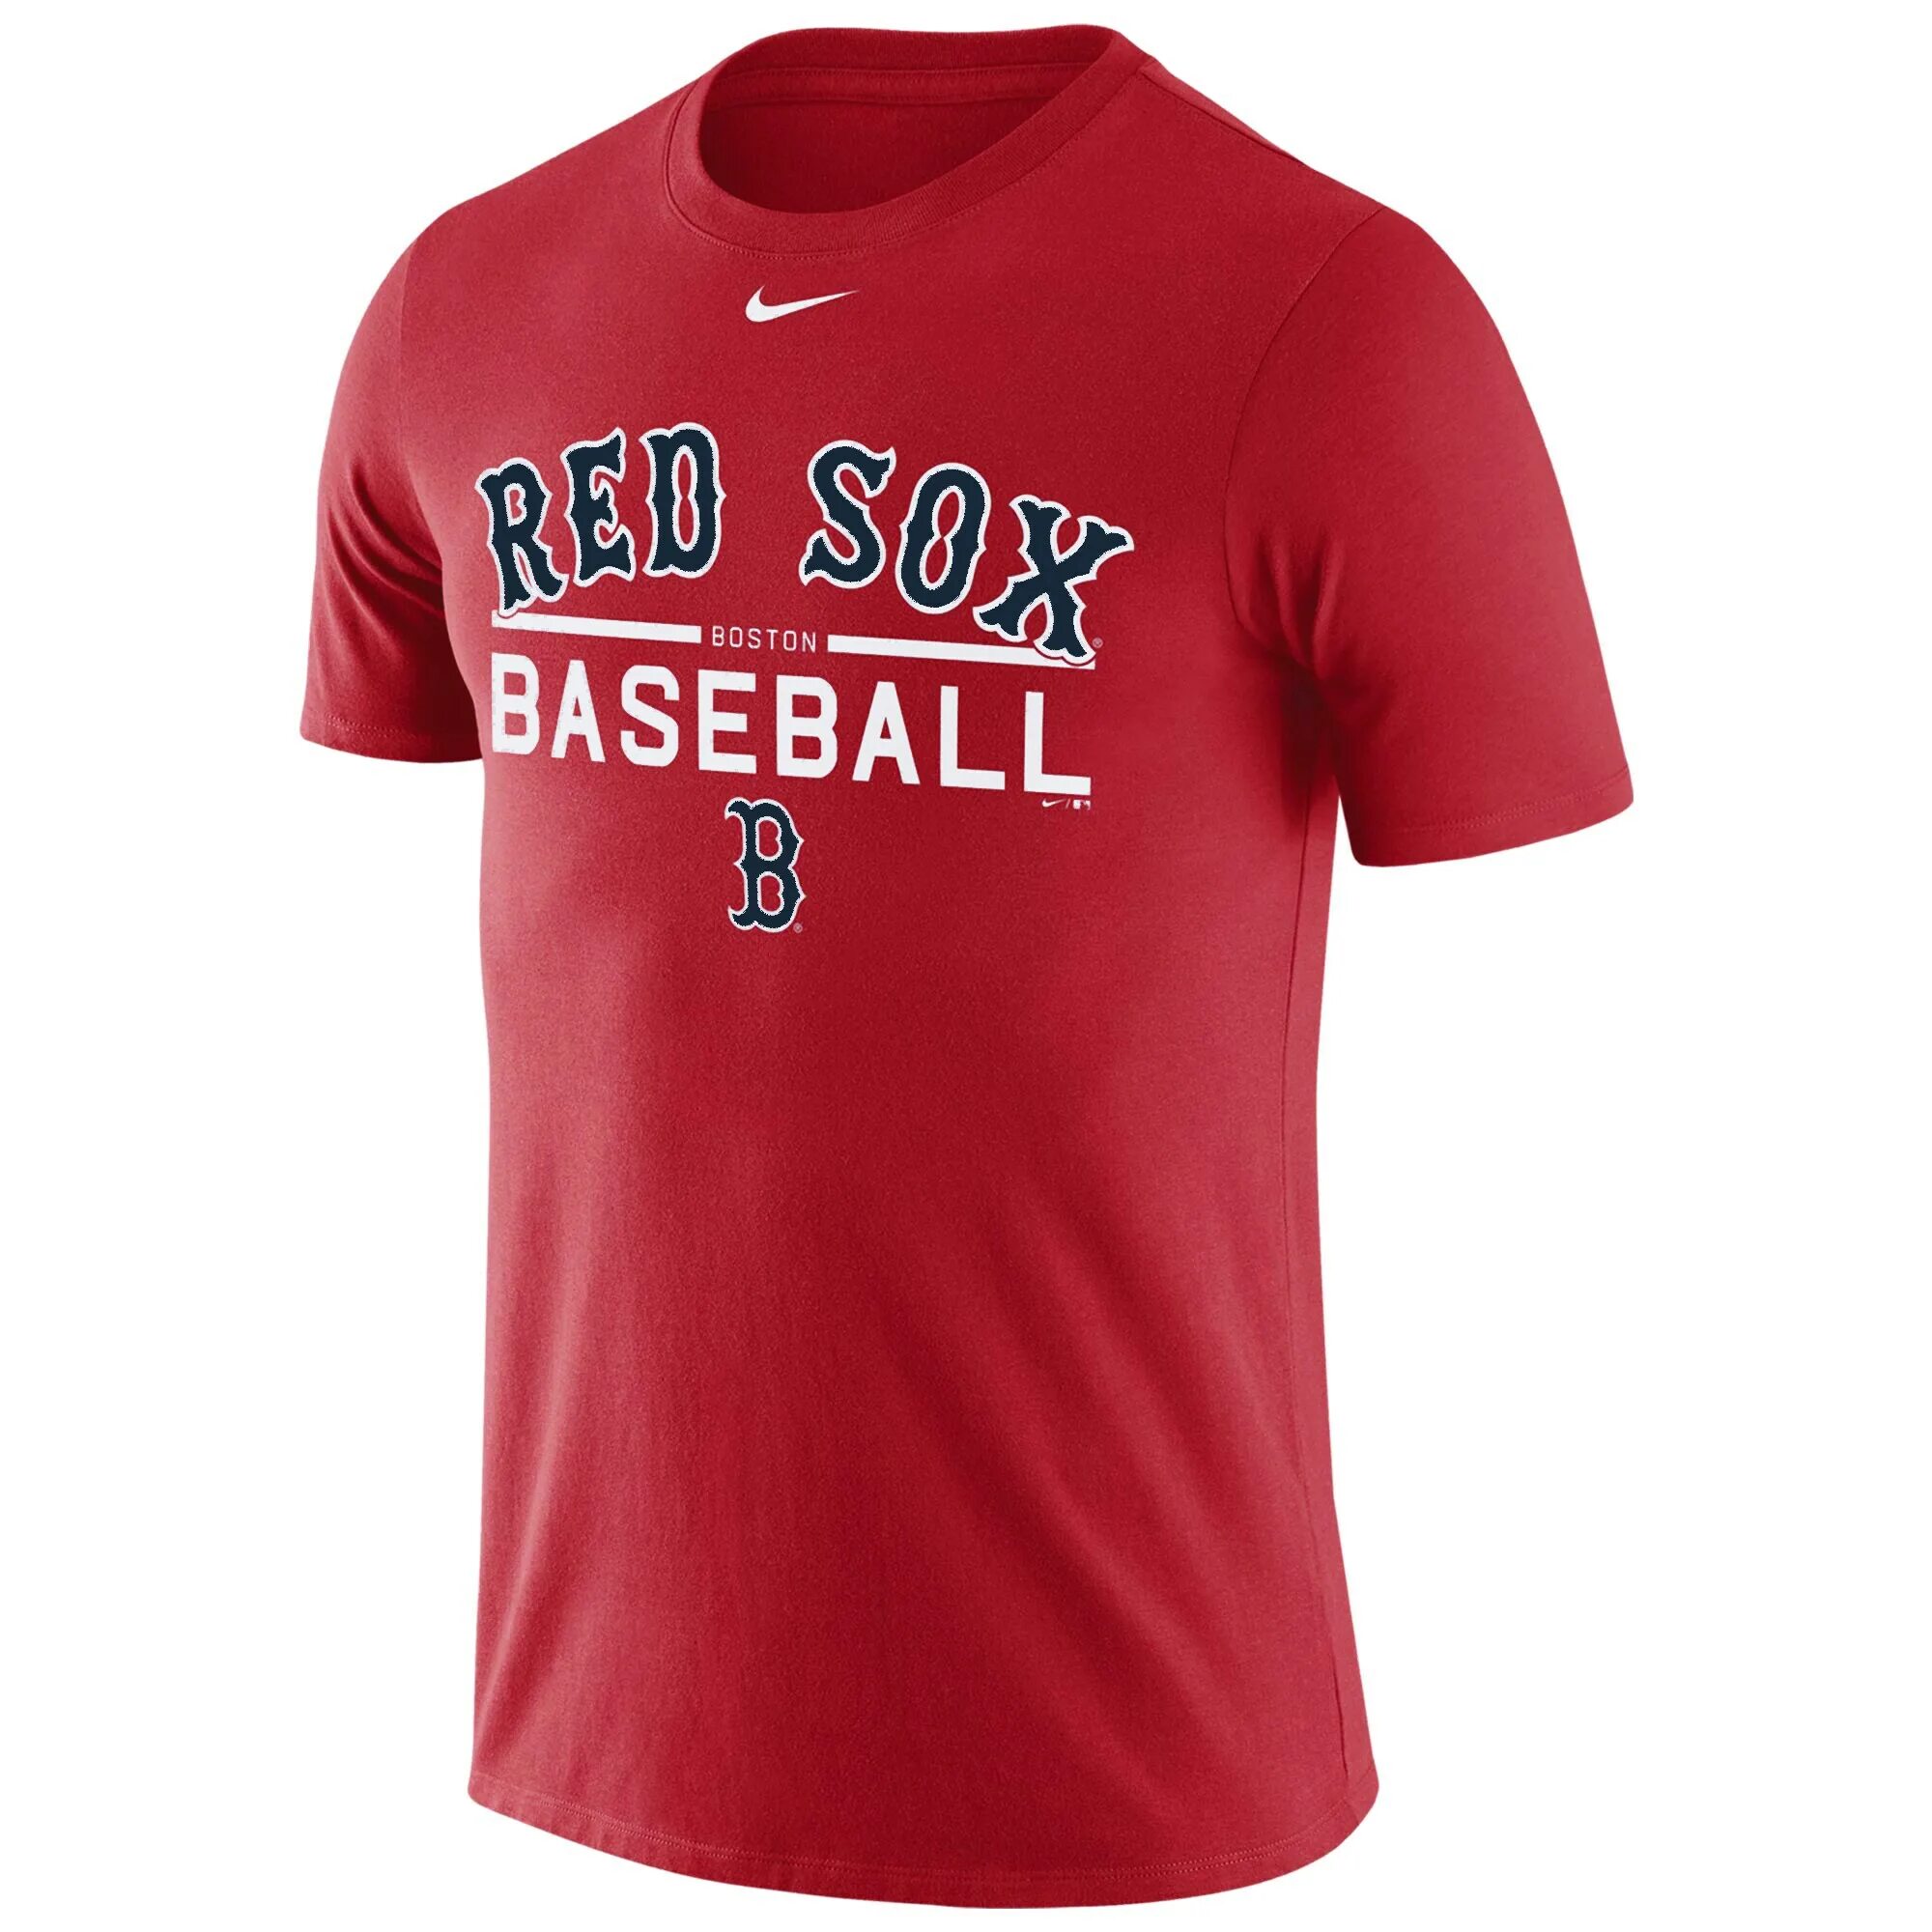 Бейсбольная футболка. Футболка Nike Red Sox. Футболка Baseball. Футболка бейсбольная мужская. Бейсбол футболка.